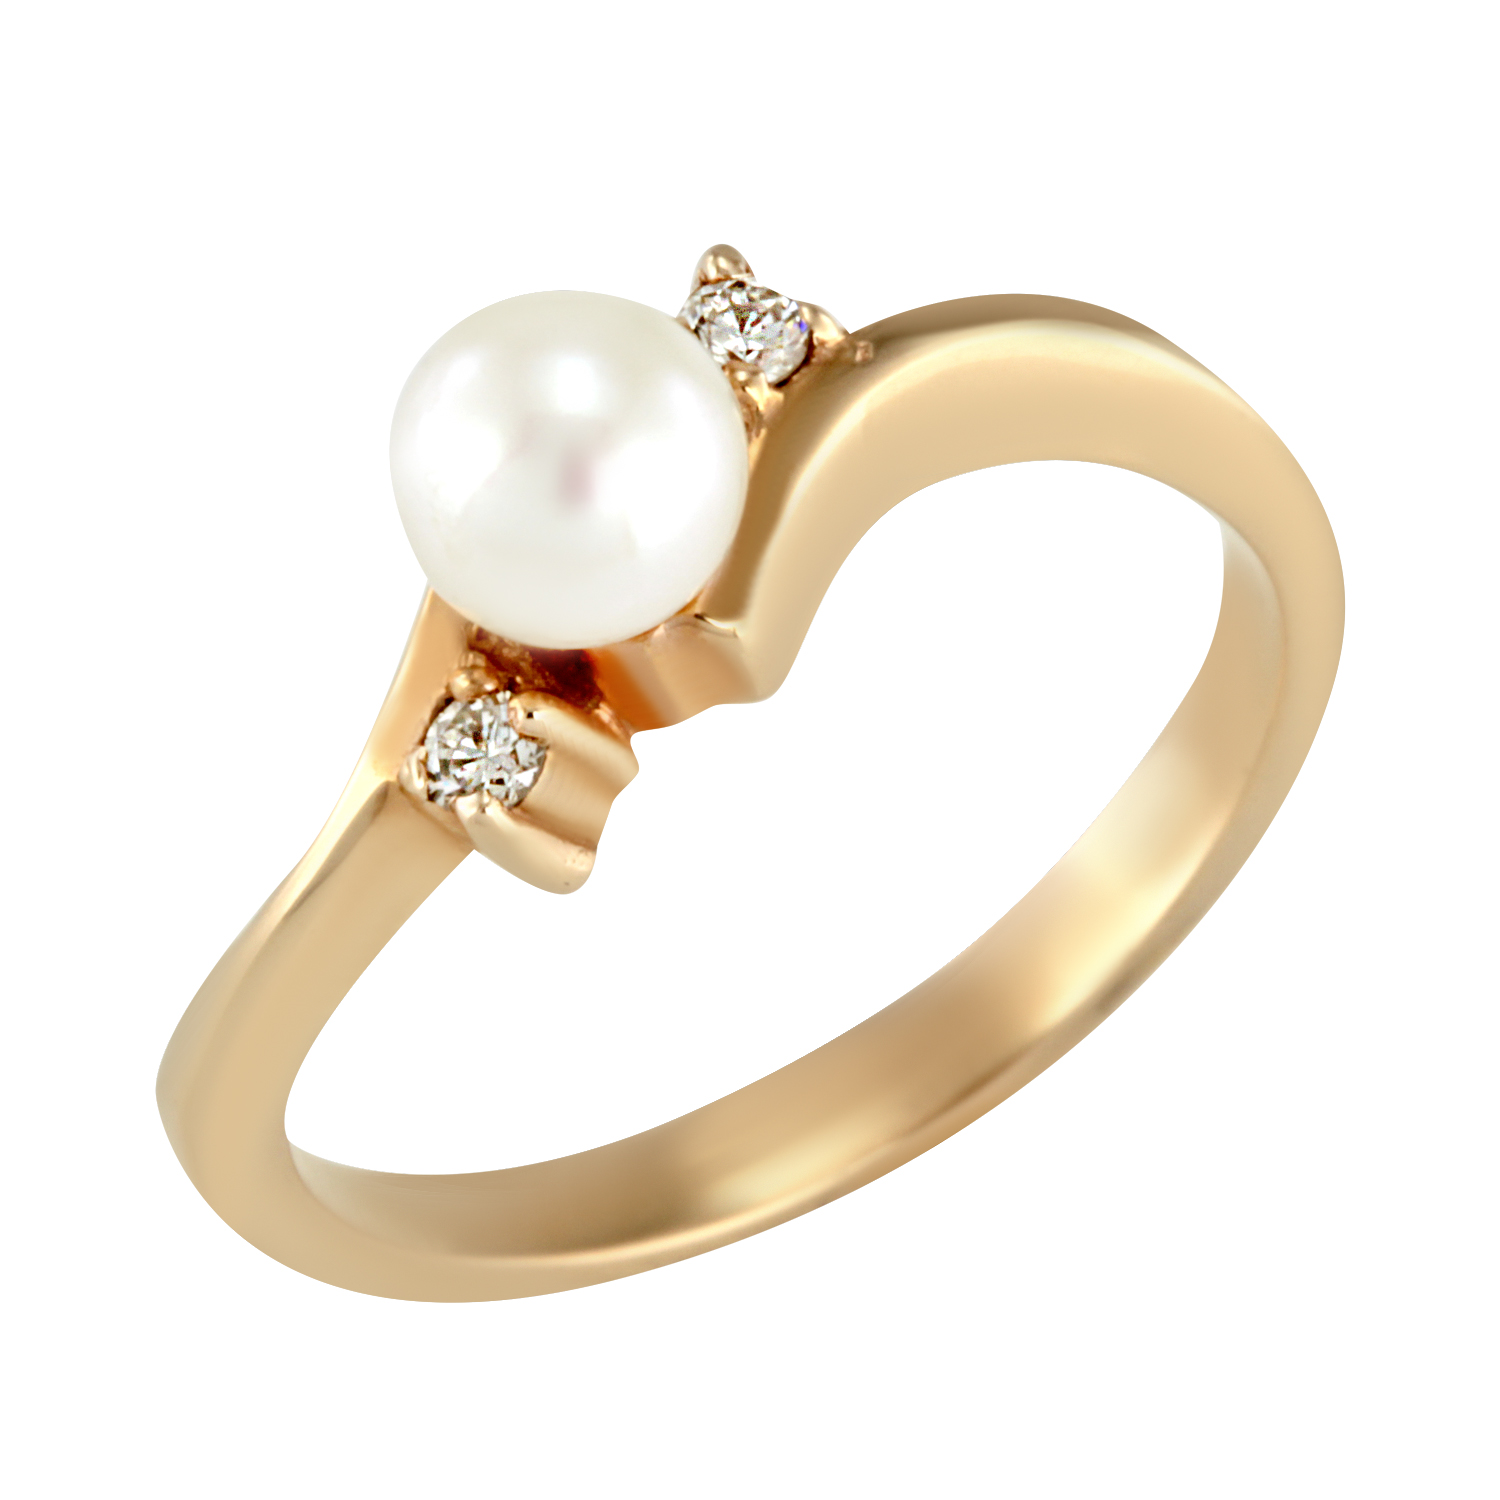  Золотое кольцо с бриллиантами и жемчугом ZE56